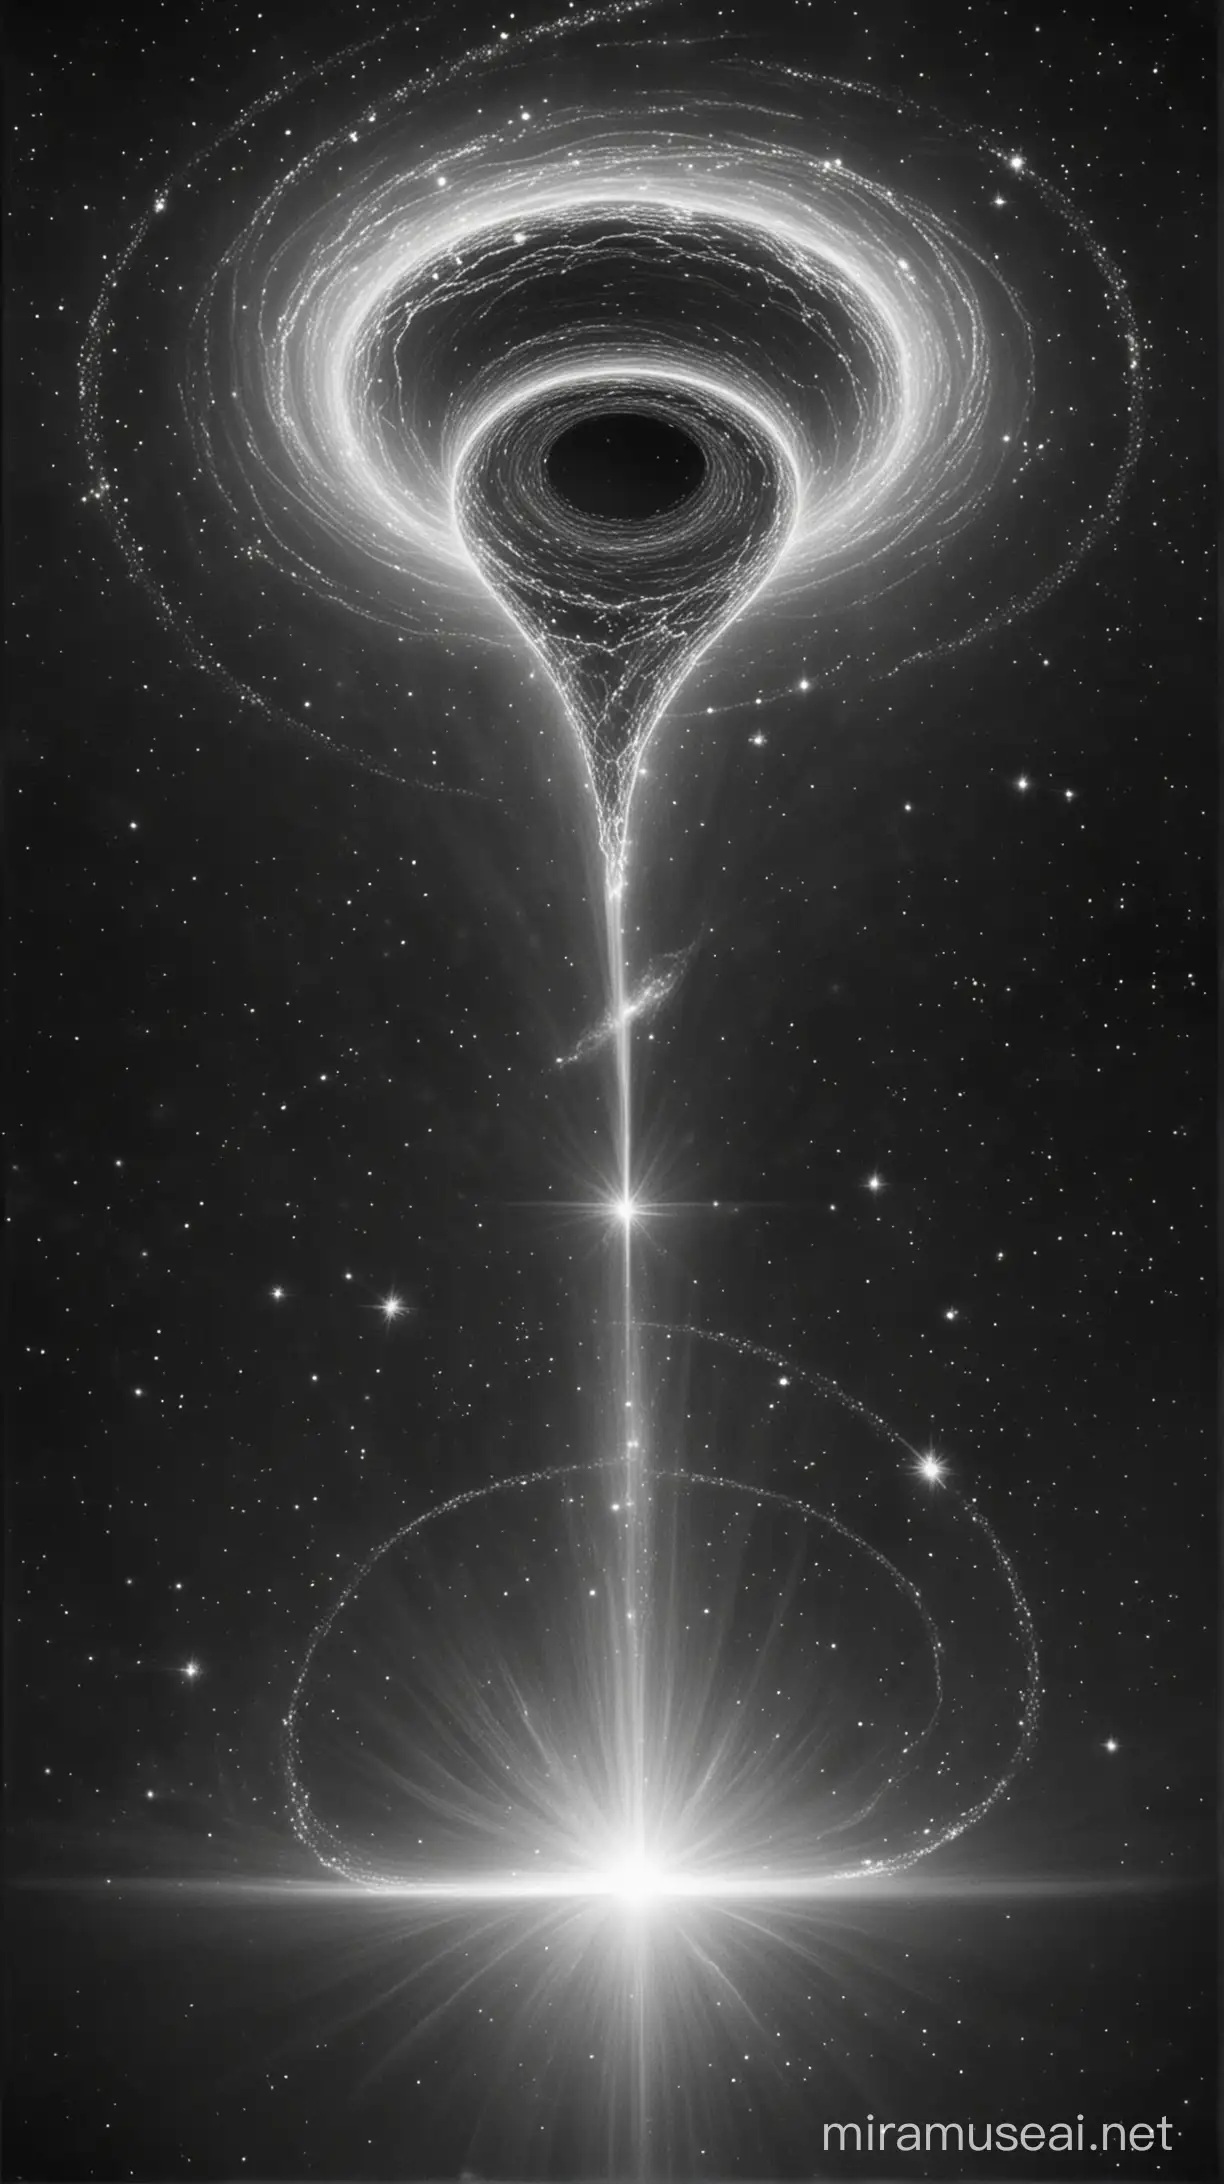 Desde el punto de la singularidad iluminada por el círculo de energía en el cuadro izquierdo, estalla en una sola dirección y dimensión, en forma de embudo, varios rayos y energías en espiral, el fondo del universo está sin estrellas.